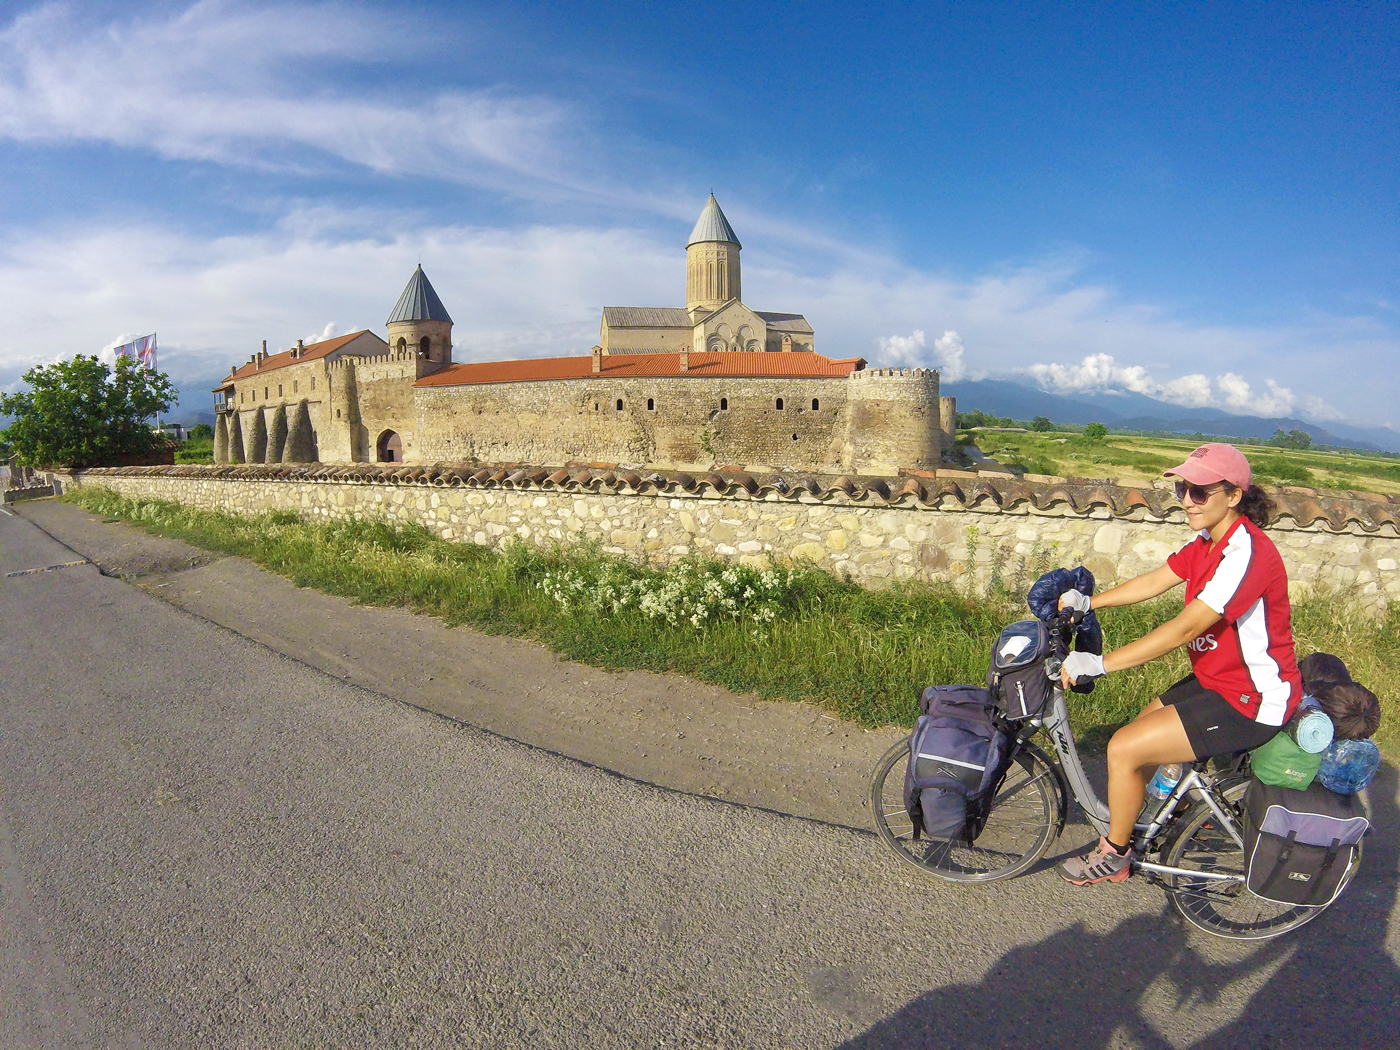 Voyage à vélo, la Géorgie à vélo, monastère d'Alaverdi. Travel by bike, cycling Georgia, Alaverdi monastery.